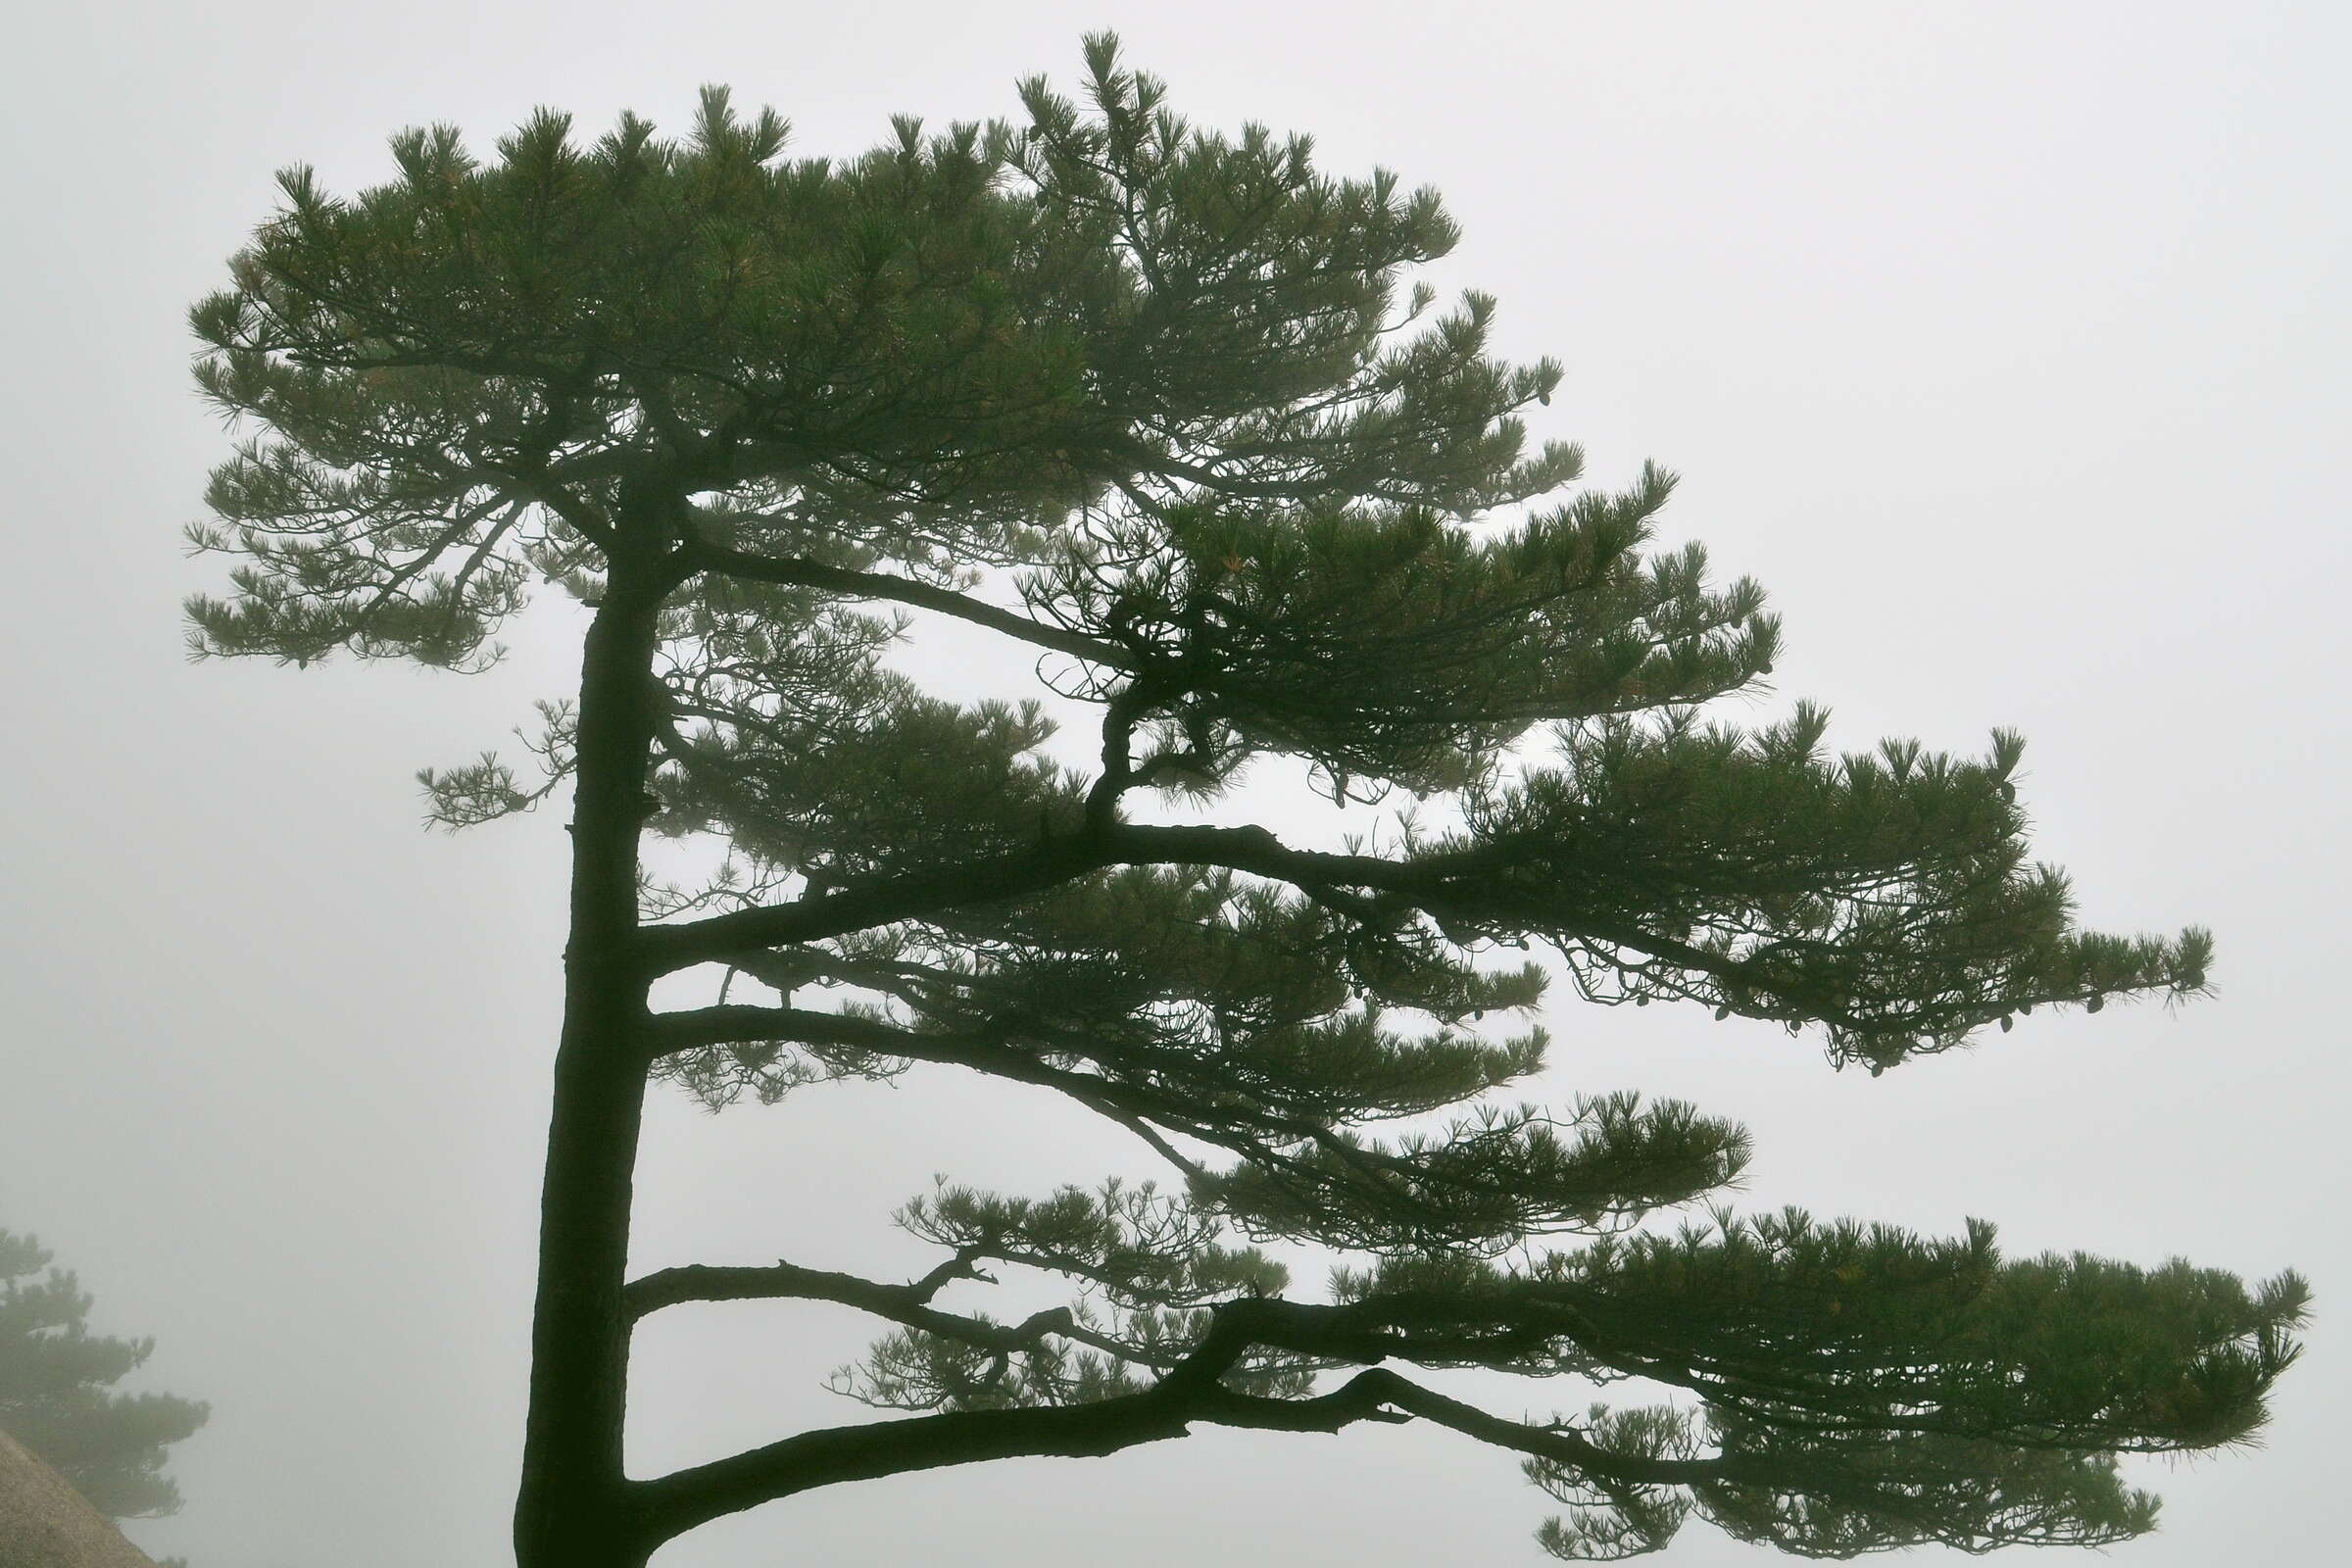 Image of Huangshan Pine